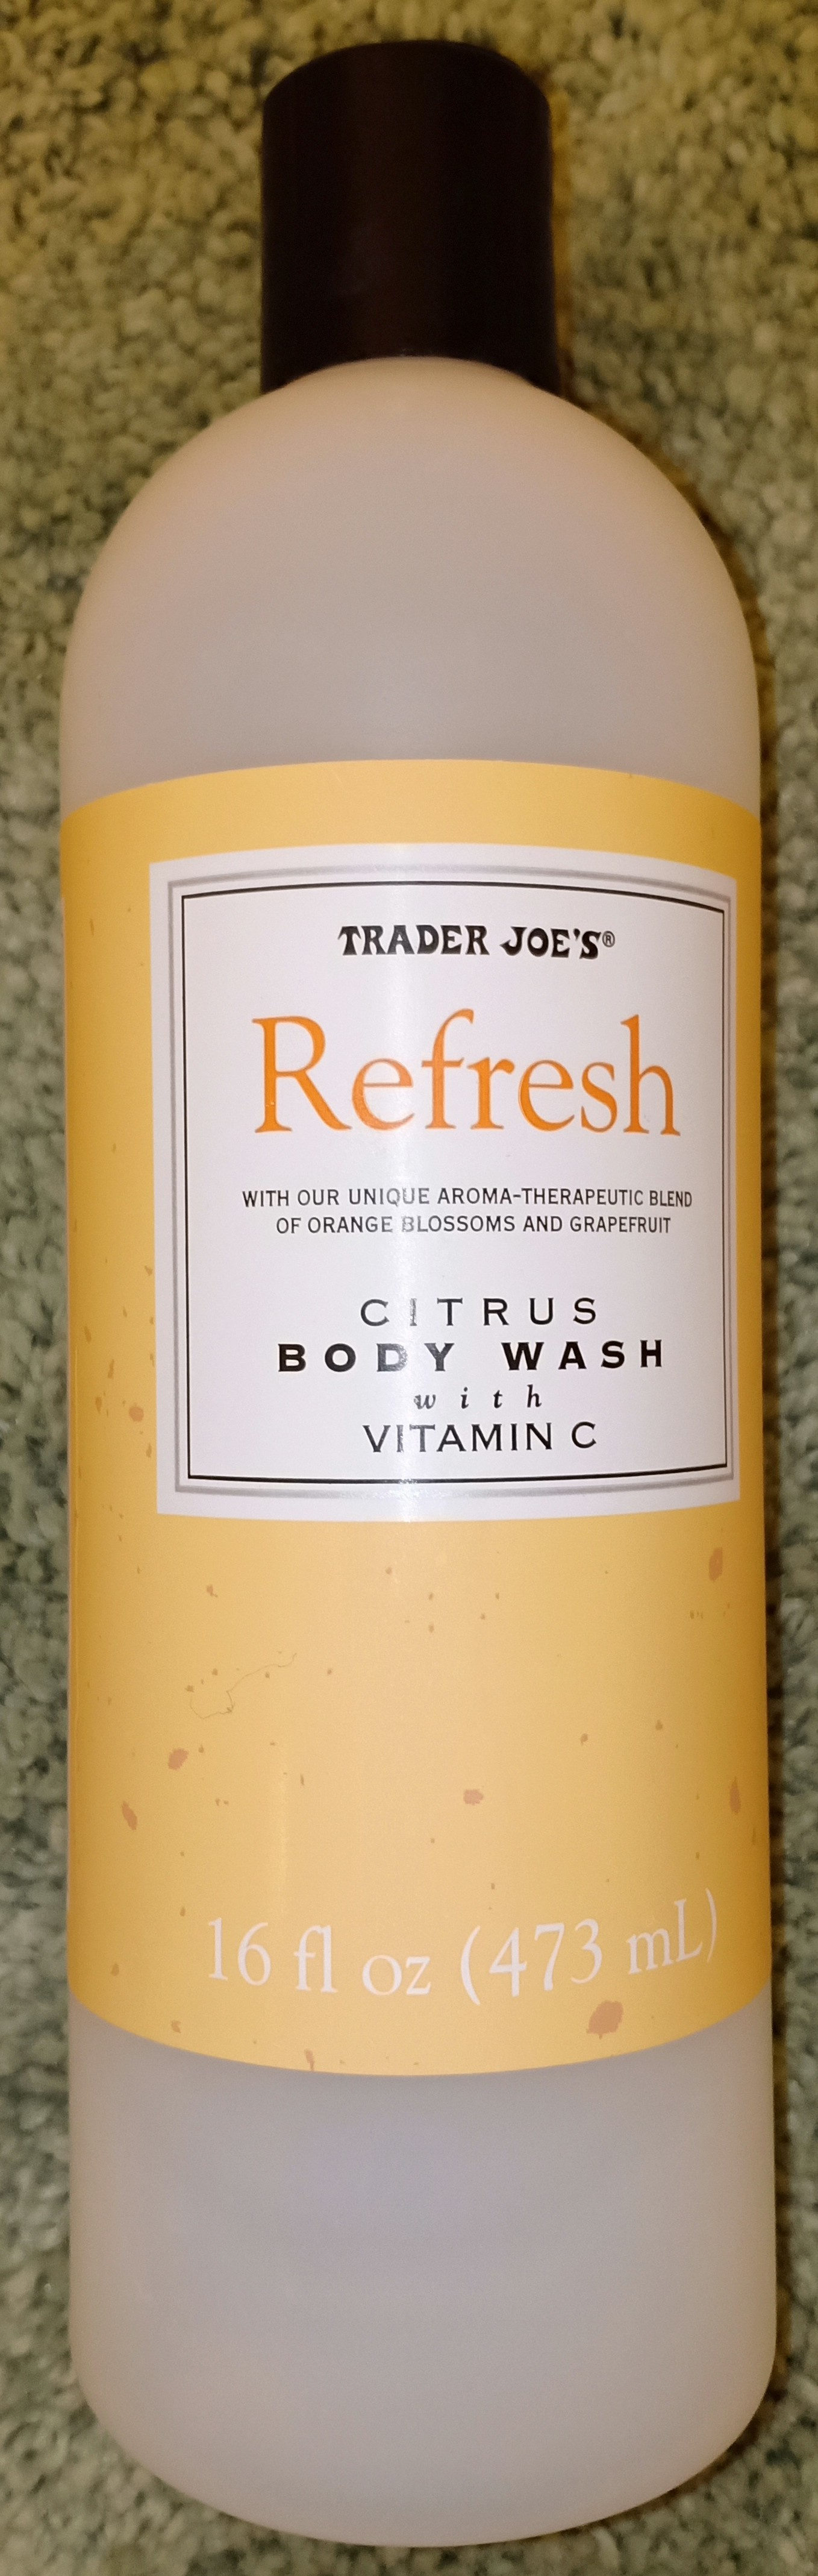 citrus body wash - Product - en